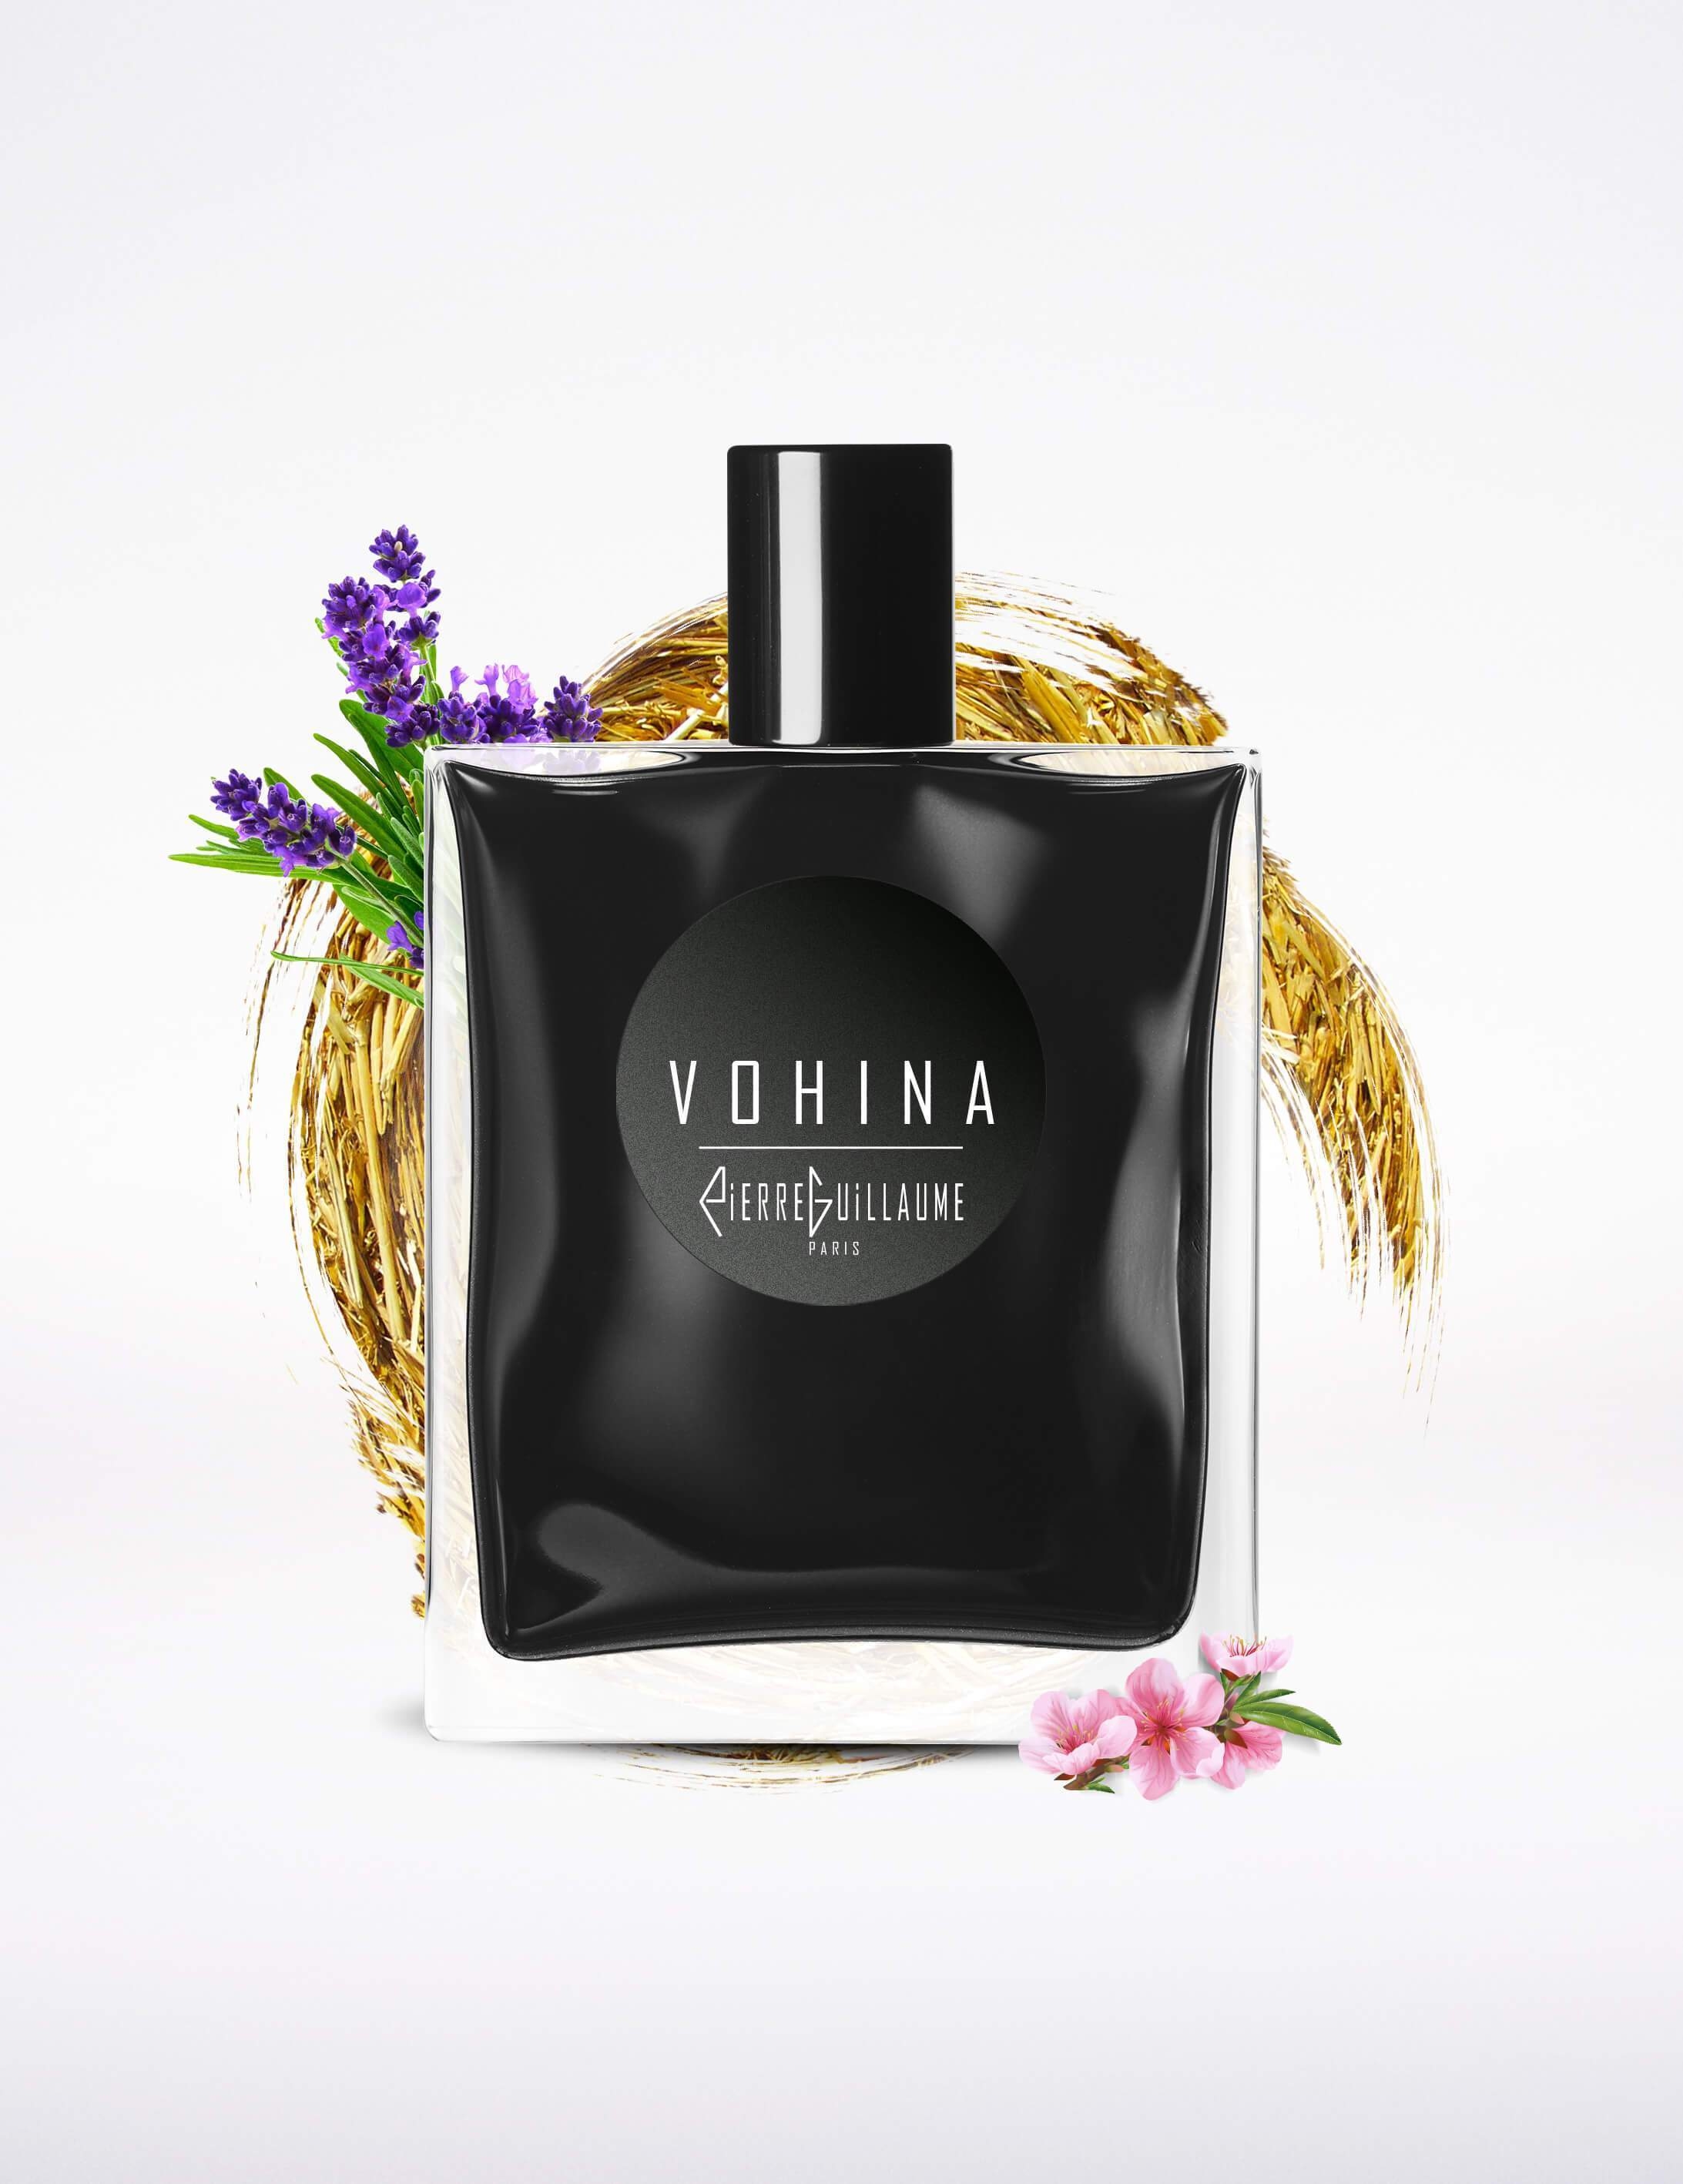 Vohina-eau de parfum-Pierre Guillaume - Noire-50 ml-Perfume Lounge